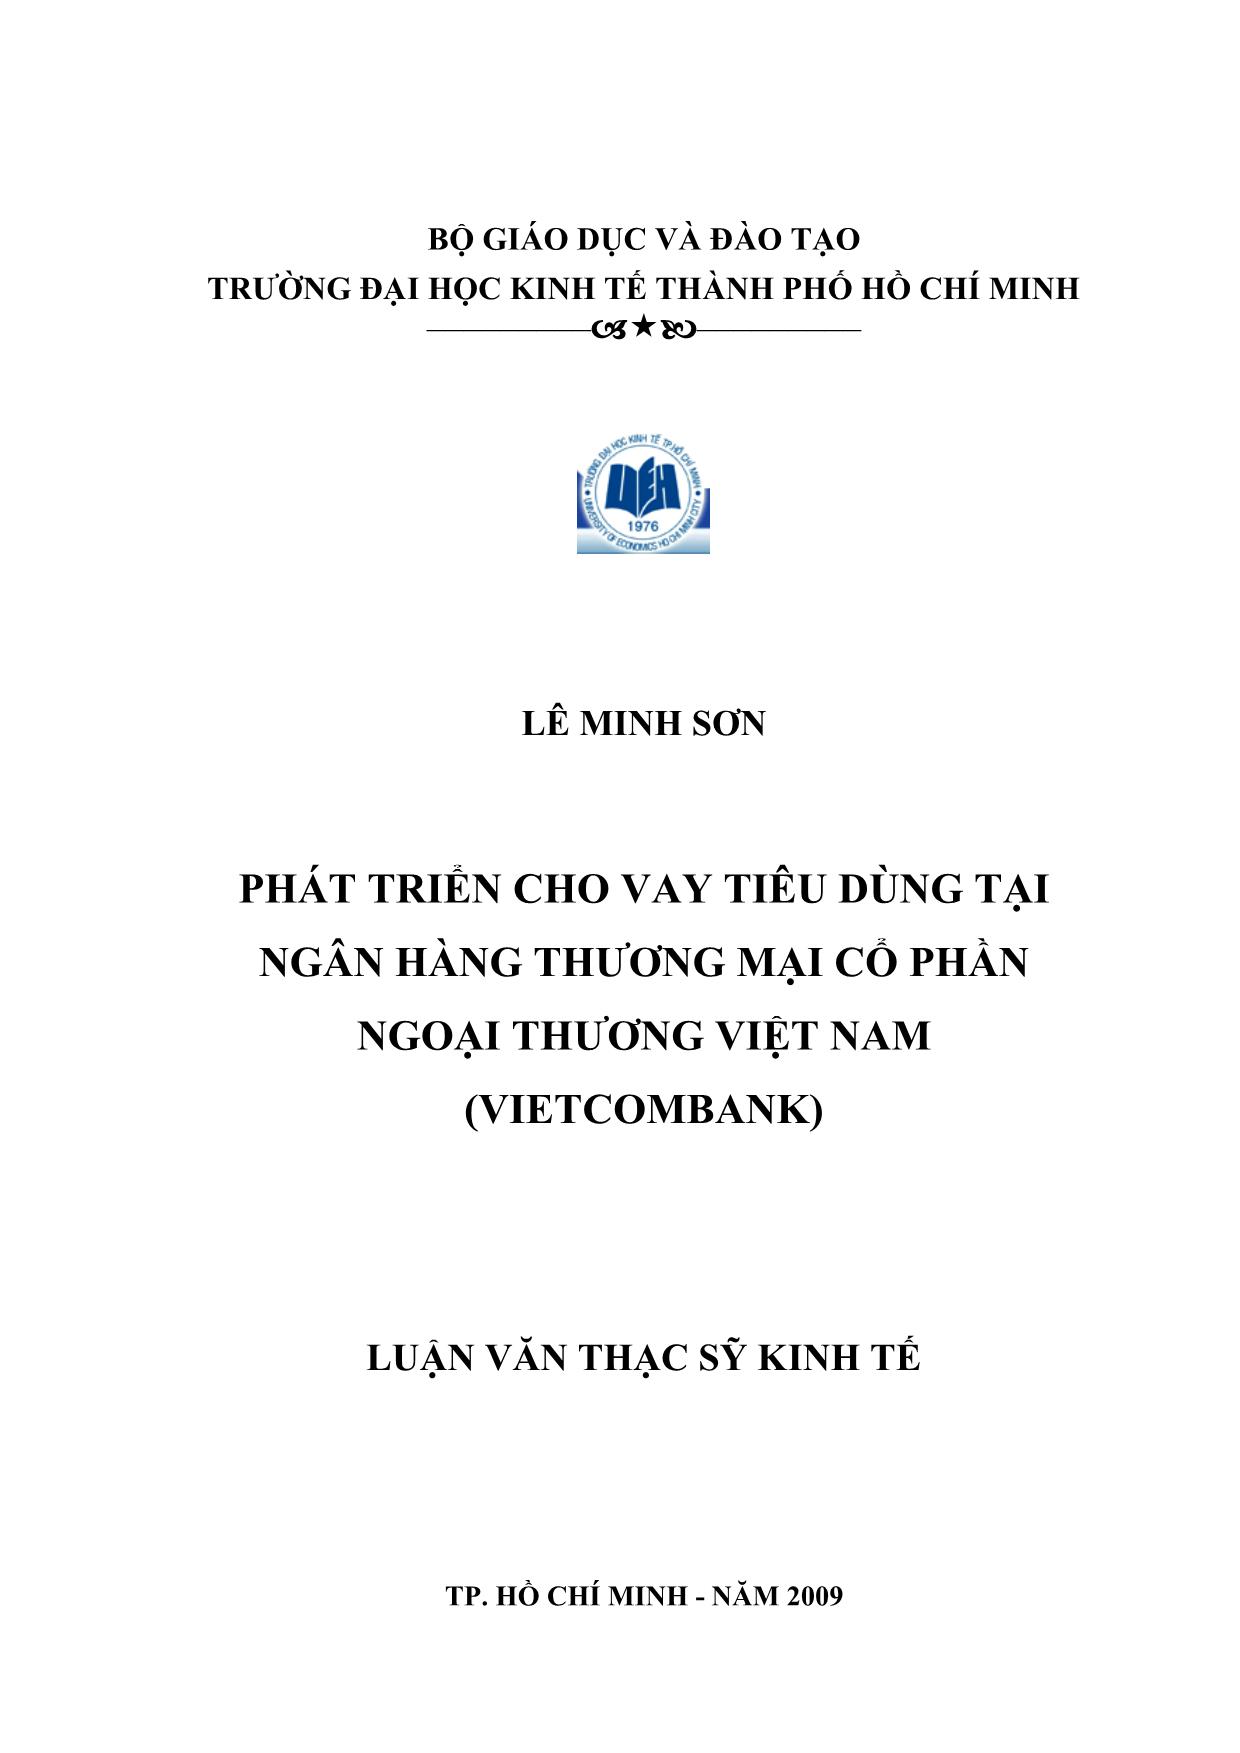 Luận văn Phát triển cho vay tiêu dùng tại ngân hàng thương mại cổ phần ngoại thương Việt Nam trang 1